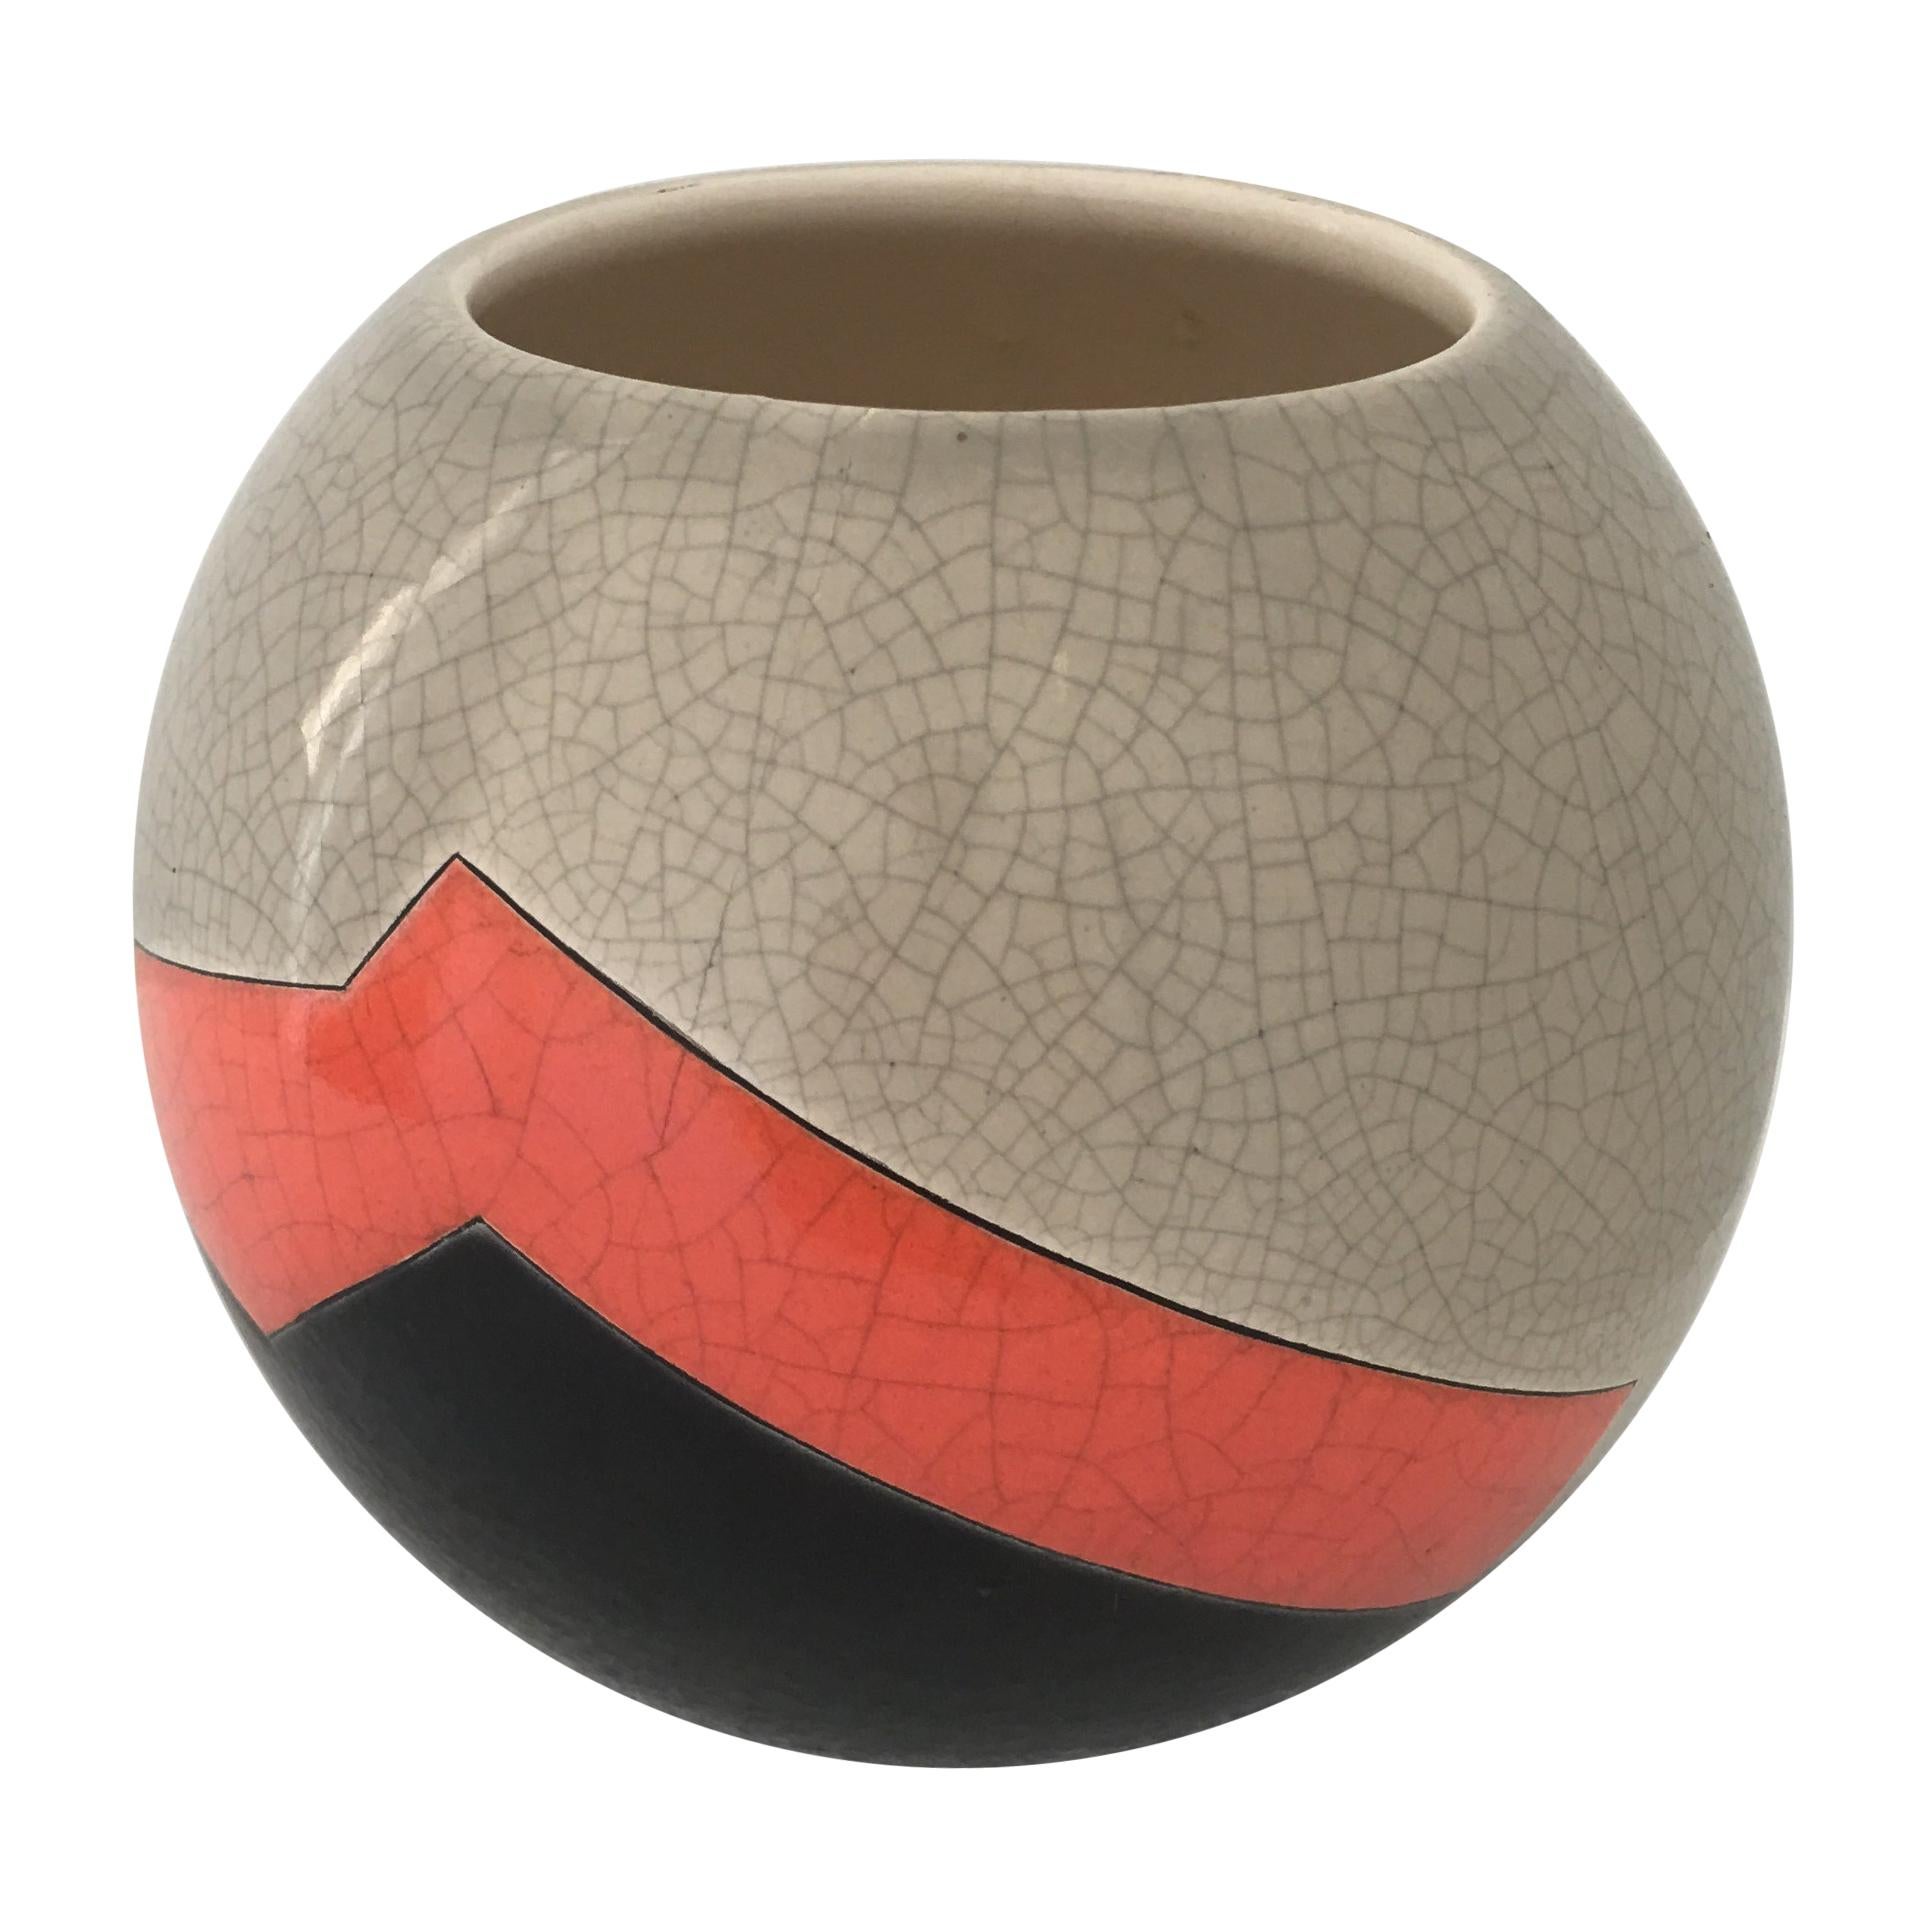 Vase Ball du céramiste français J. Suzor à motif géométrique, glaçure craqueling, Longwy